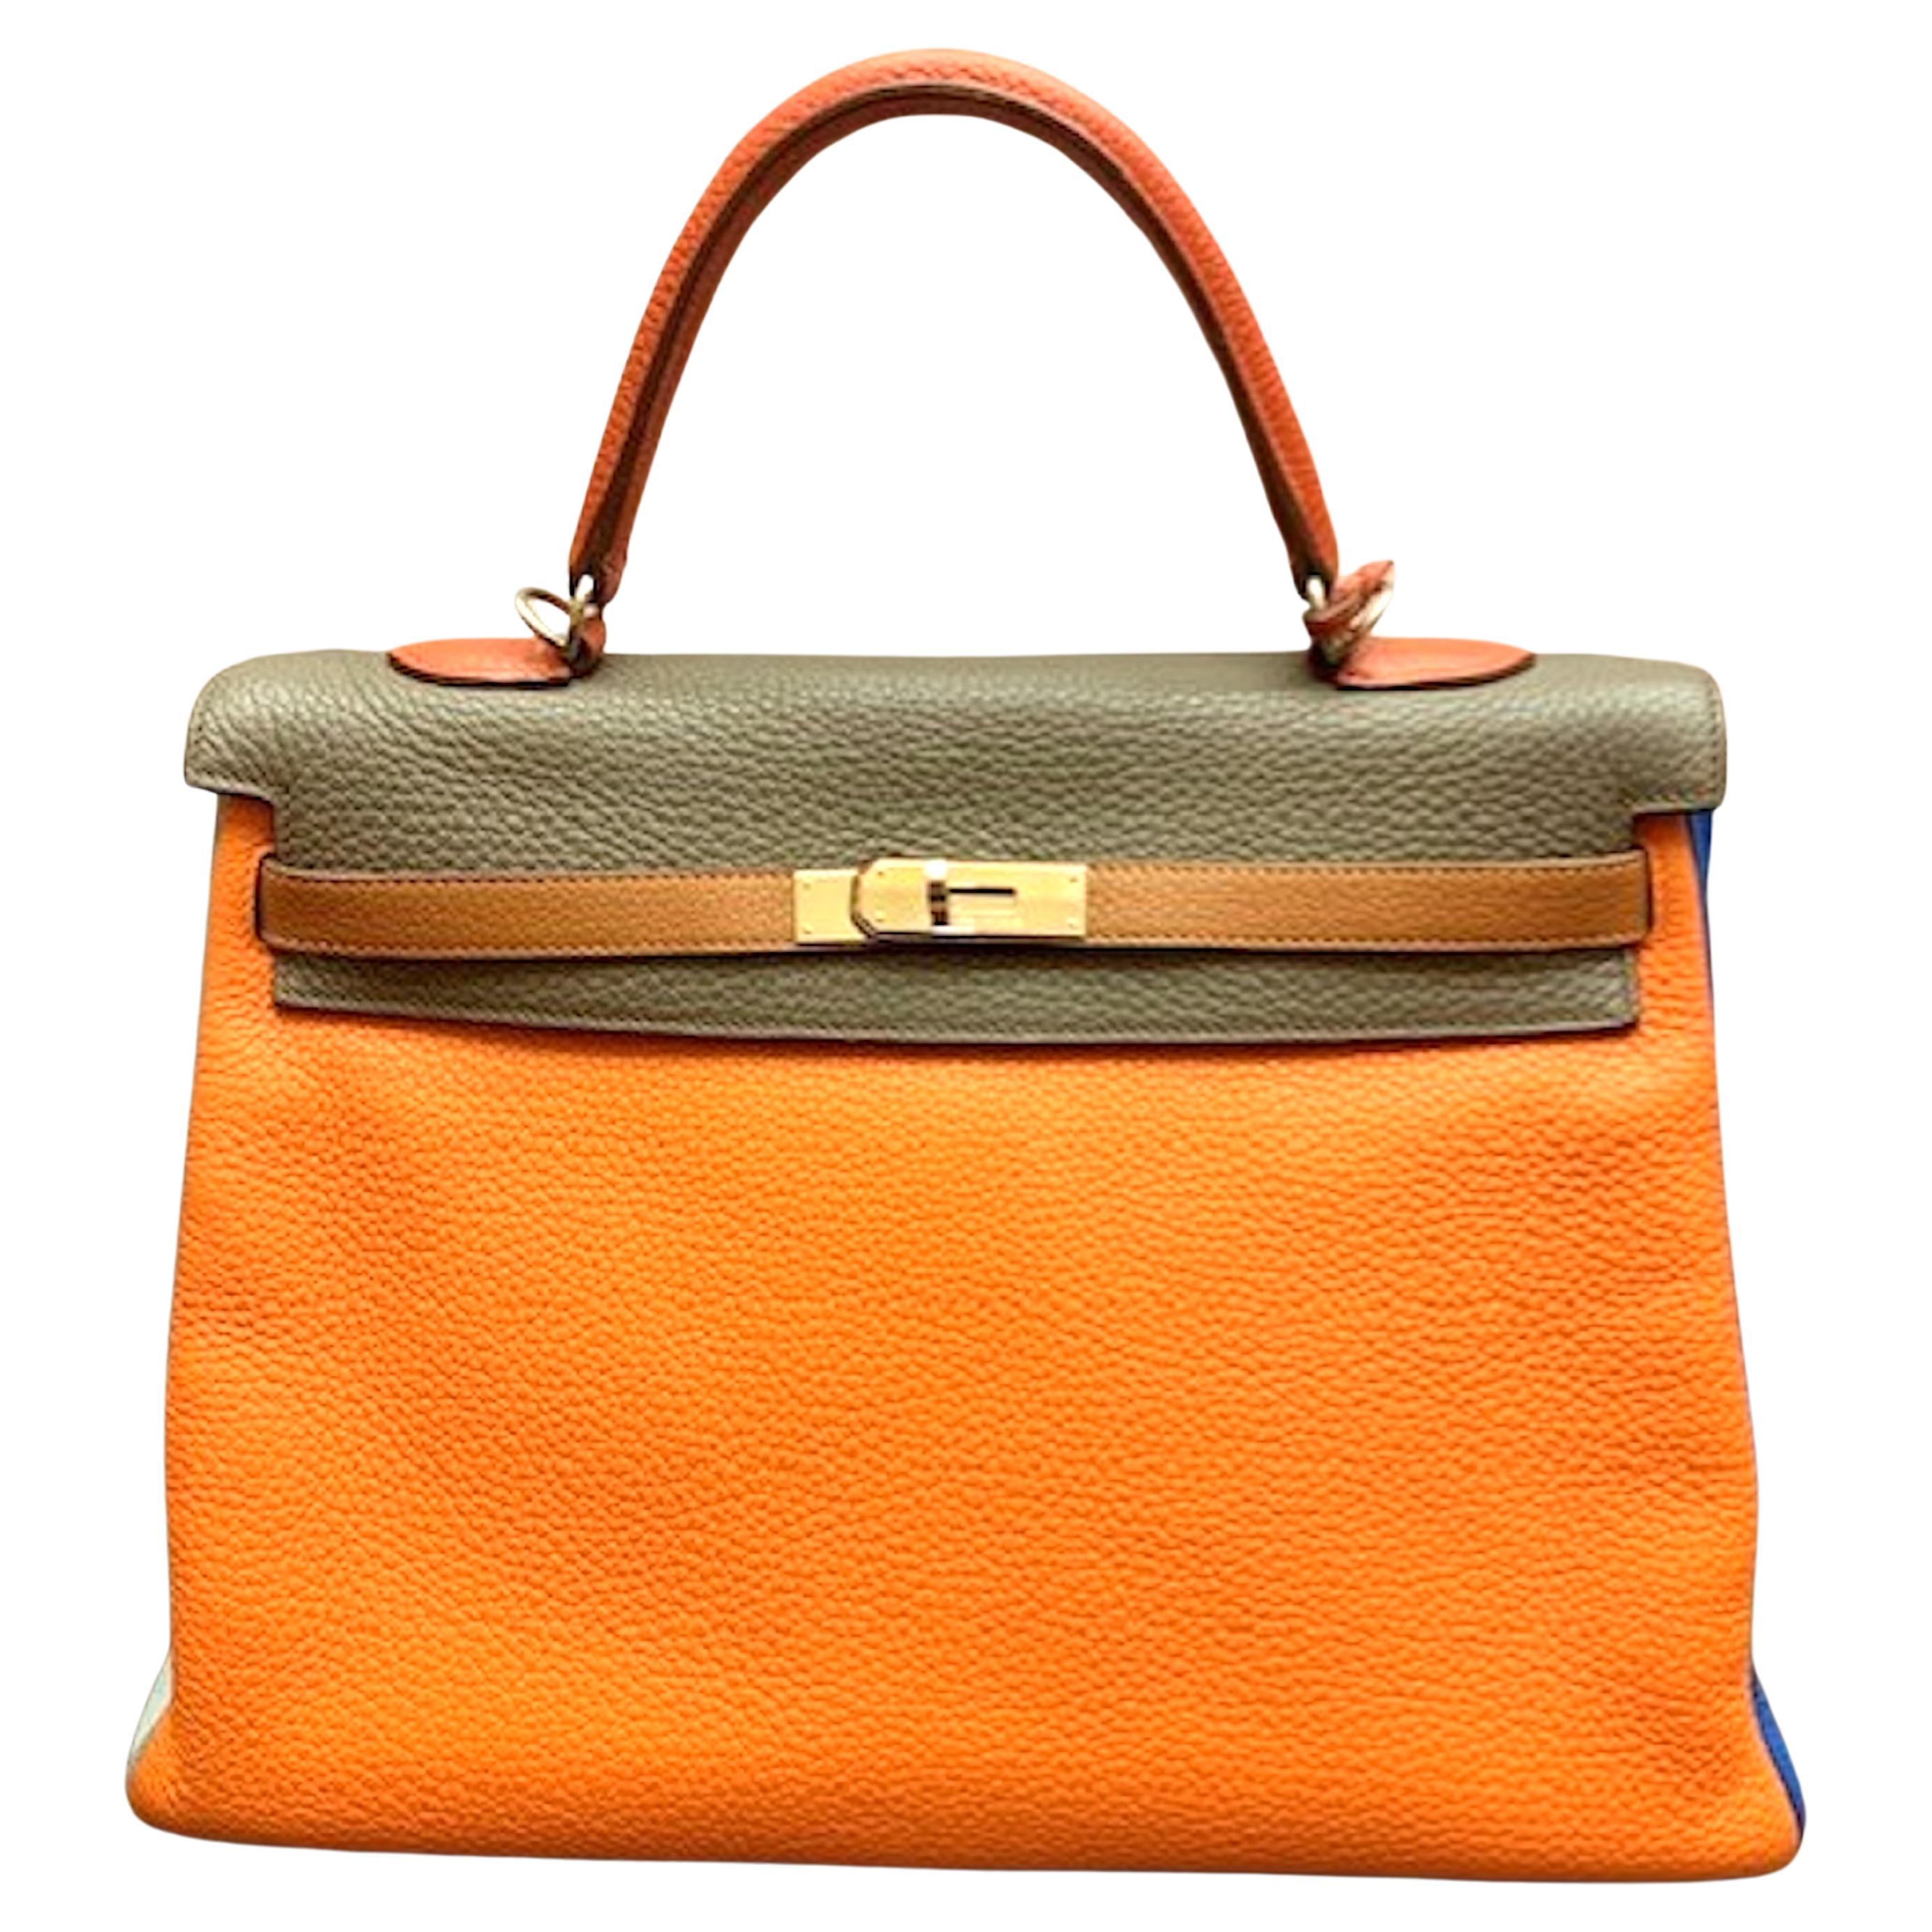 Hermes  2012 Kelly 35 Arlequin Bag Limited Edition.